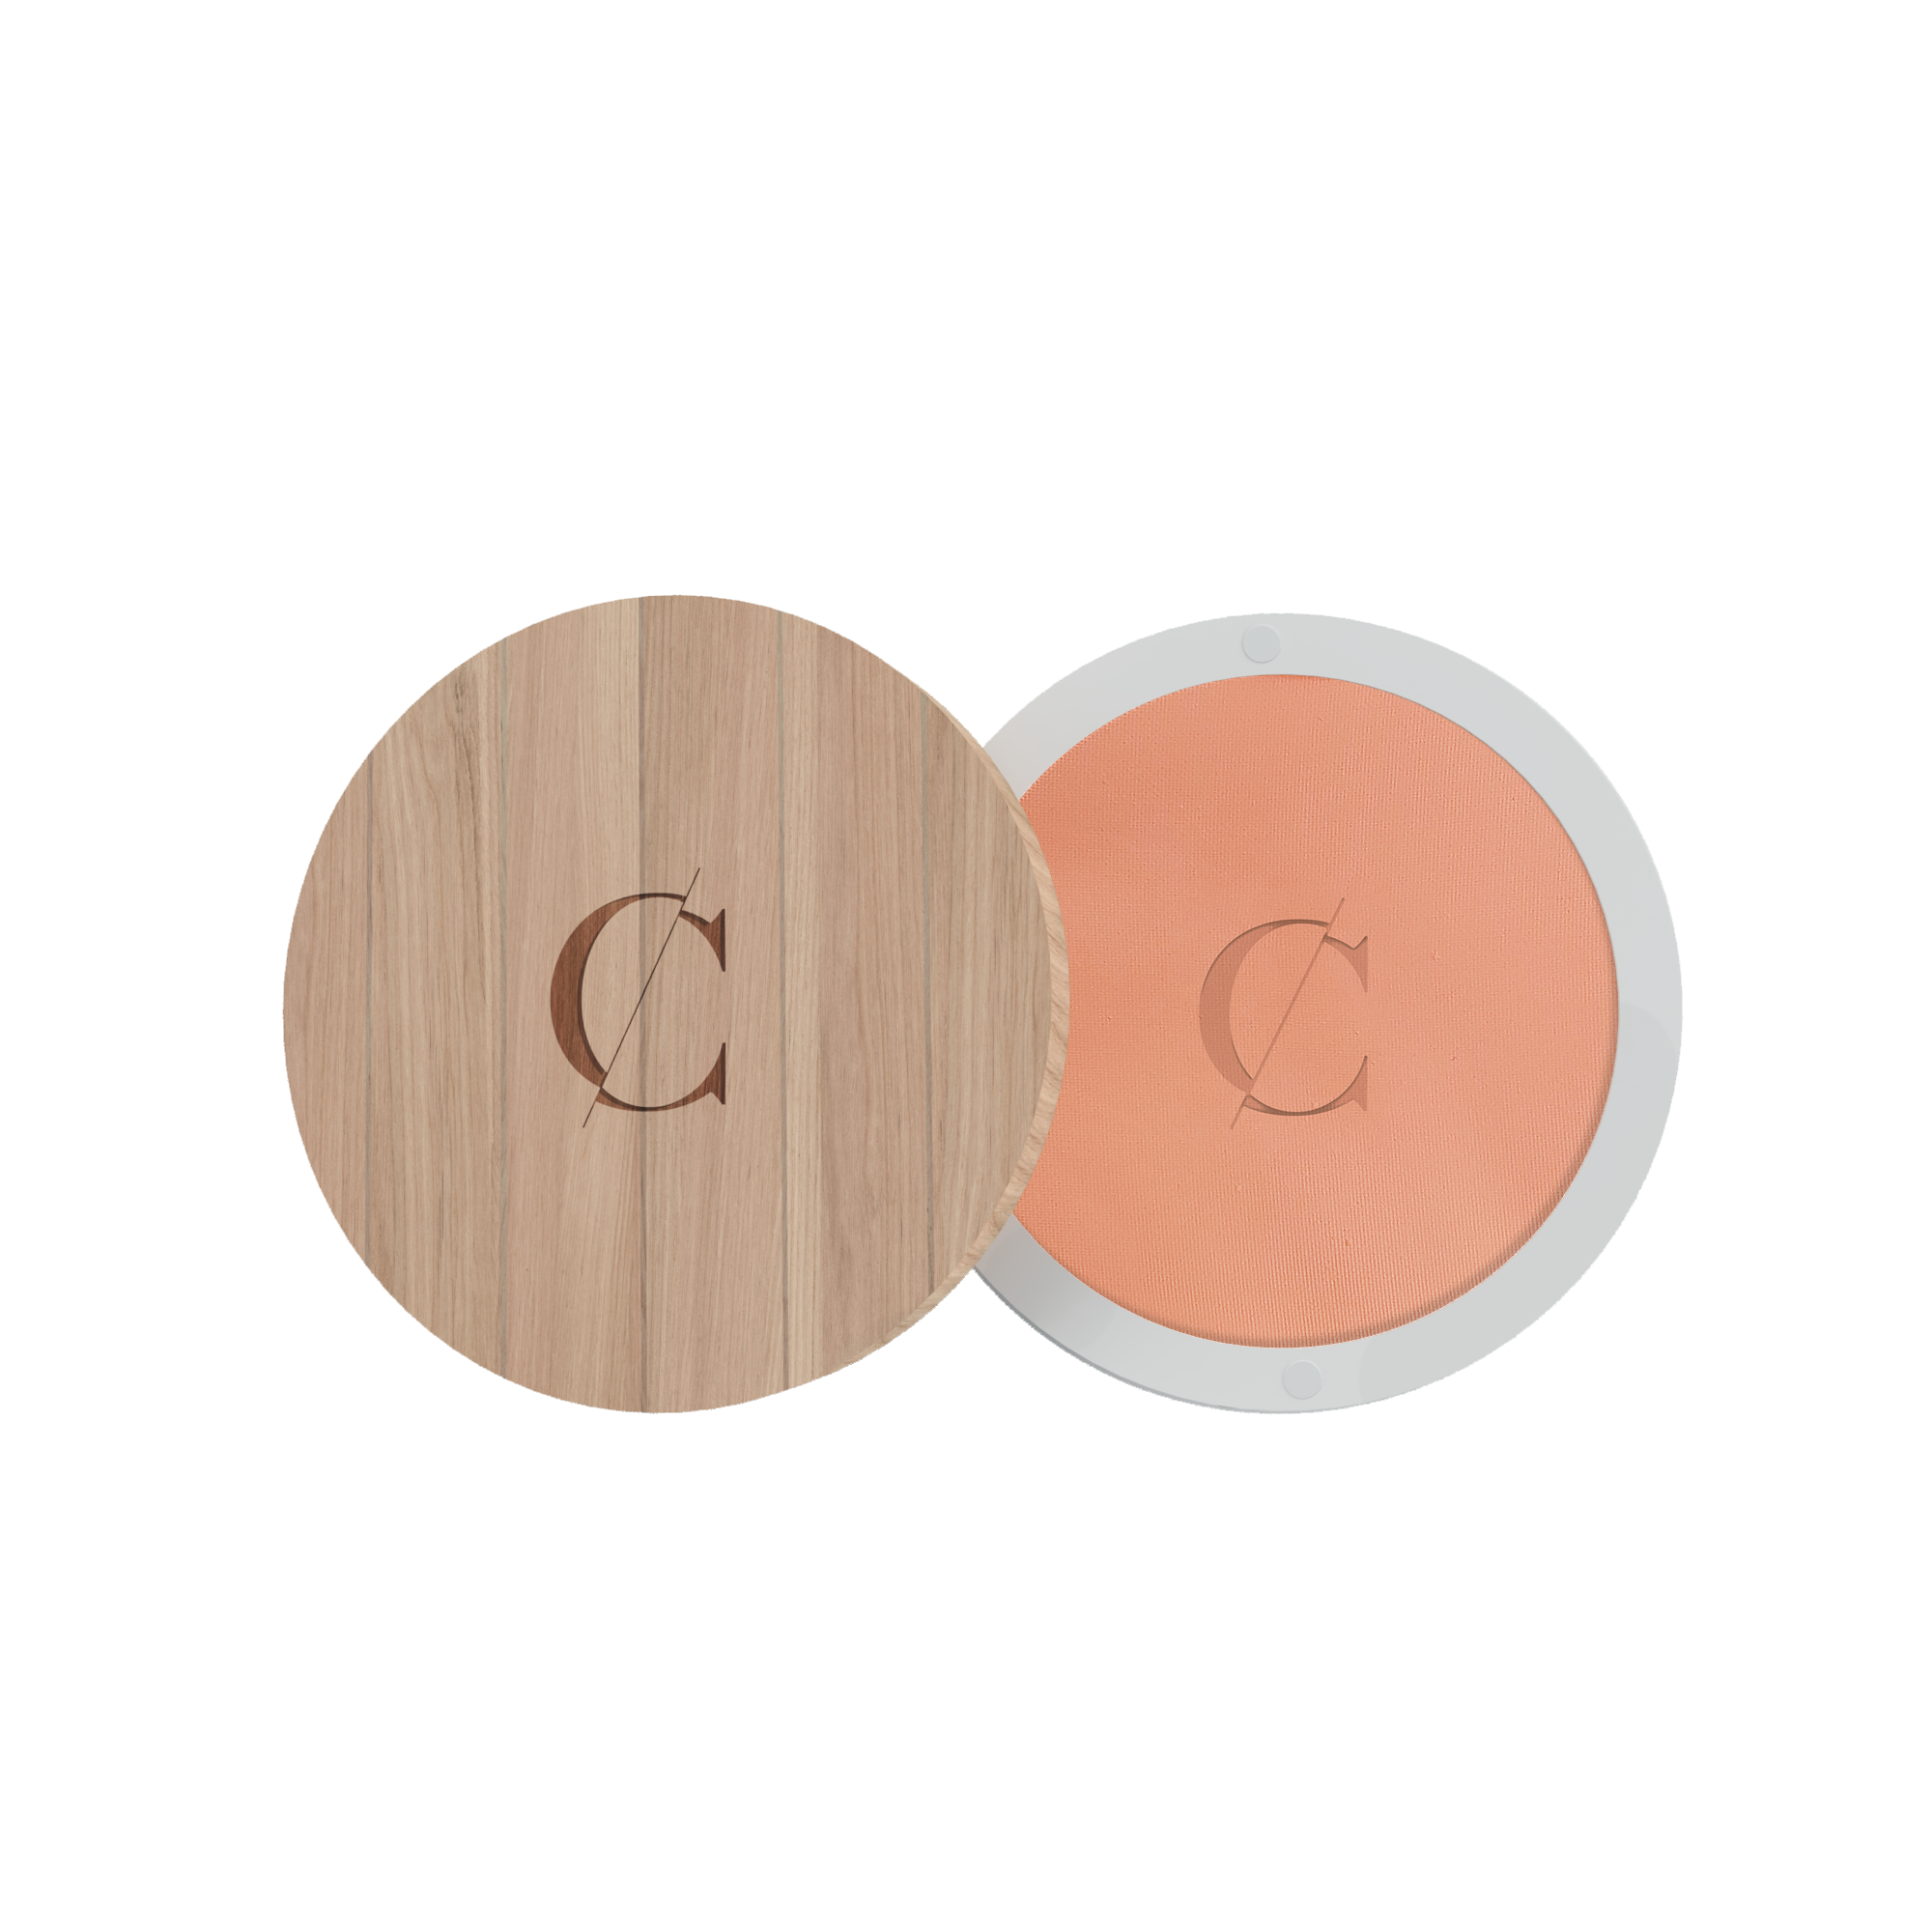 Deze natuurlijke gezichtspoeder van Couleur Caramel fixeert de teint van de huid en maakt deze biologische compact powder de huid mat en egaal. 